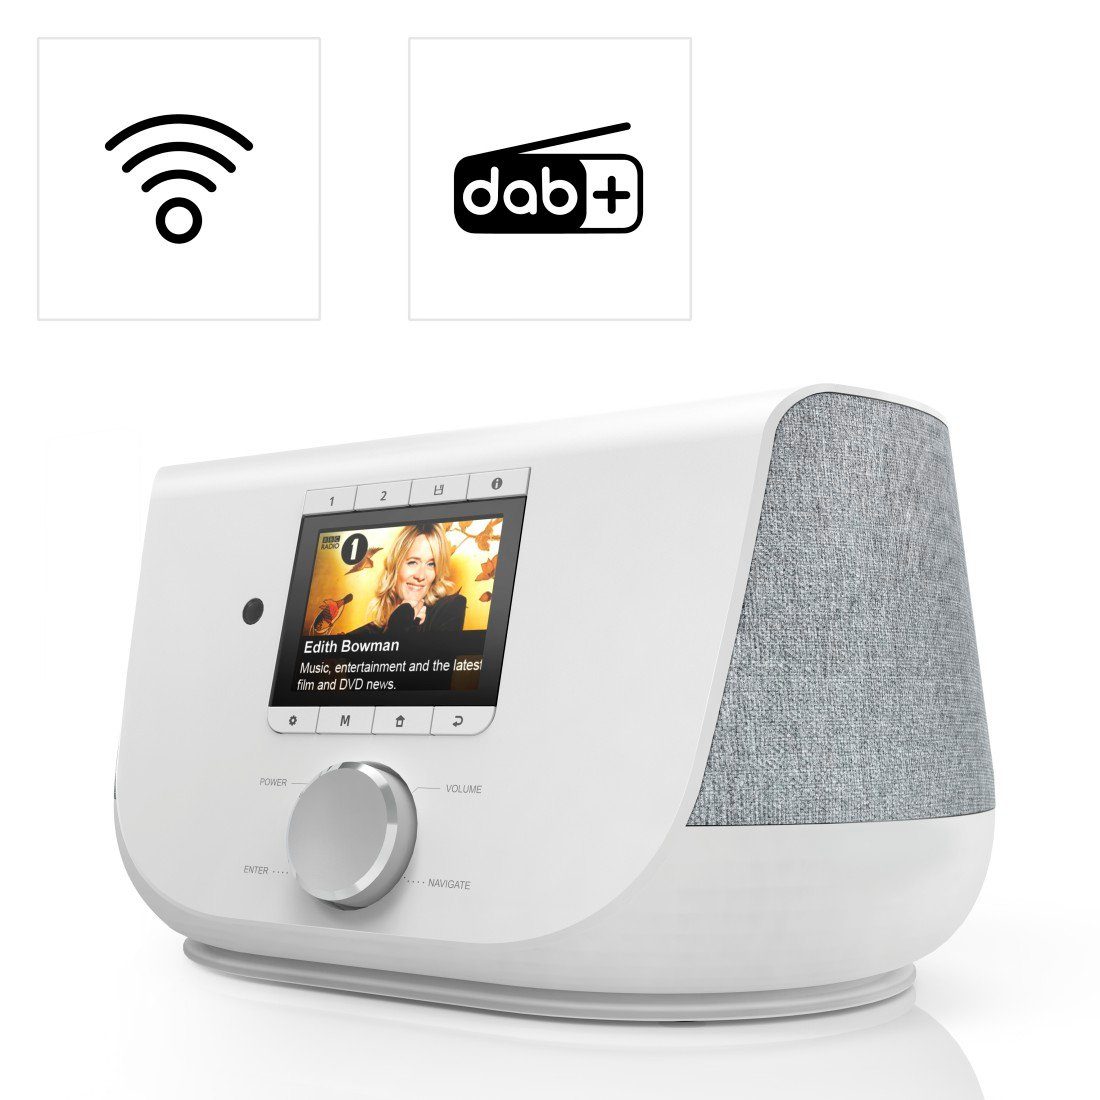 W) FM/DAB/DAB+/Internetradio/App/Bluetooth® Digitalradio 20 (DAB) (Digitalradio Internetradio, Digitalradio (DAB), FM-Tuner, weiß DIR3300SBT Hama